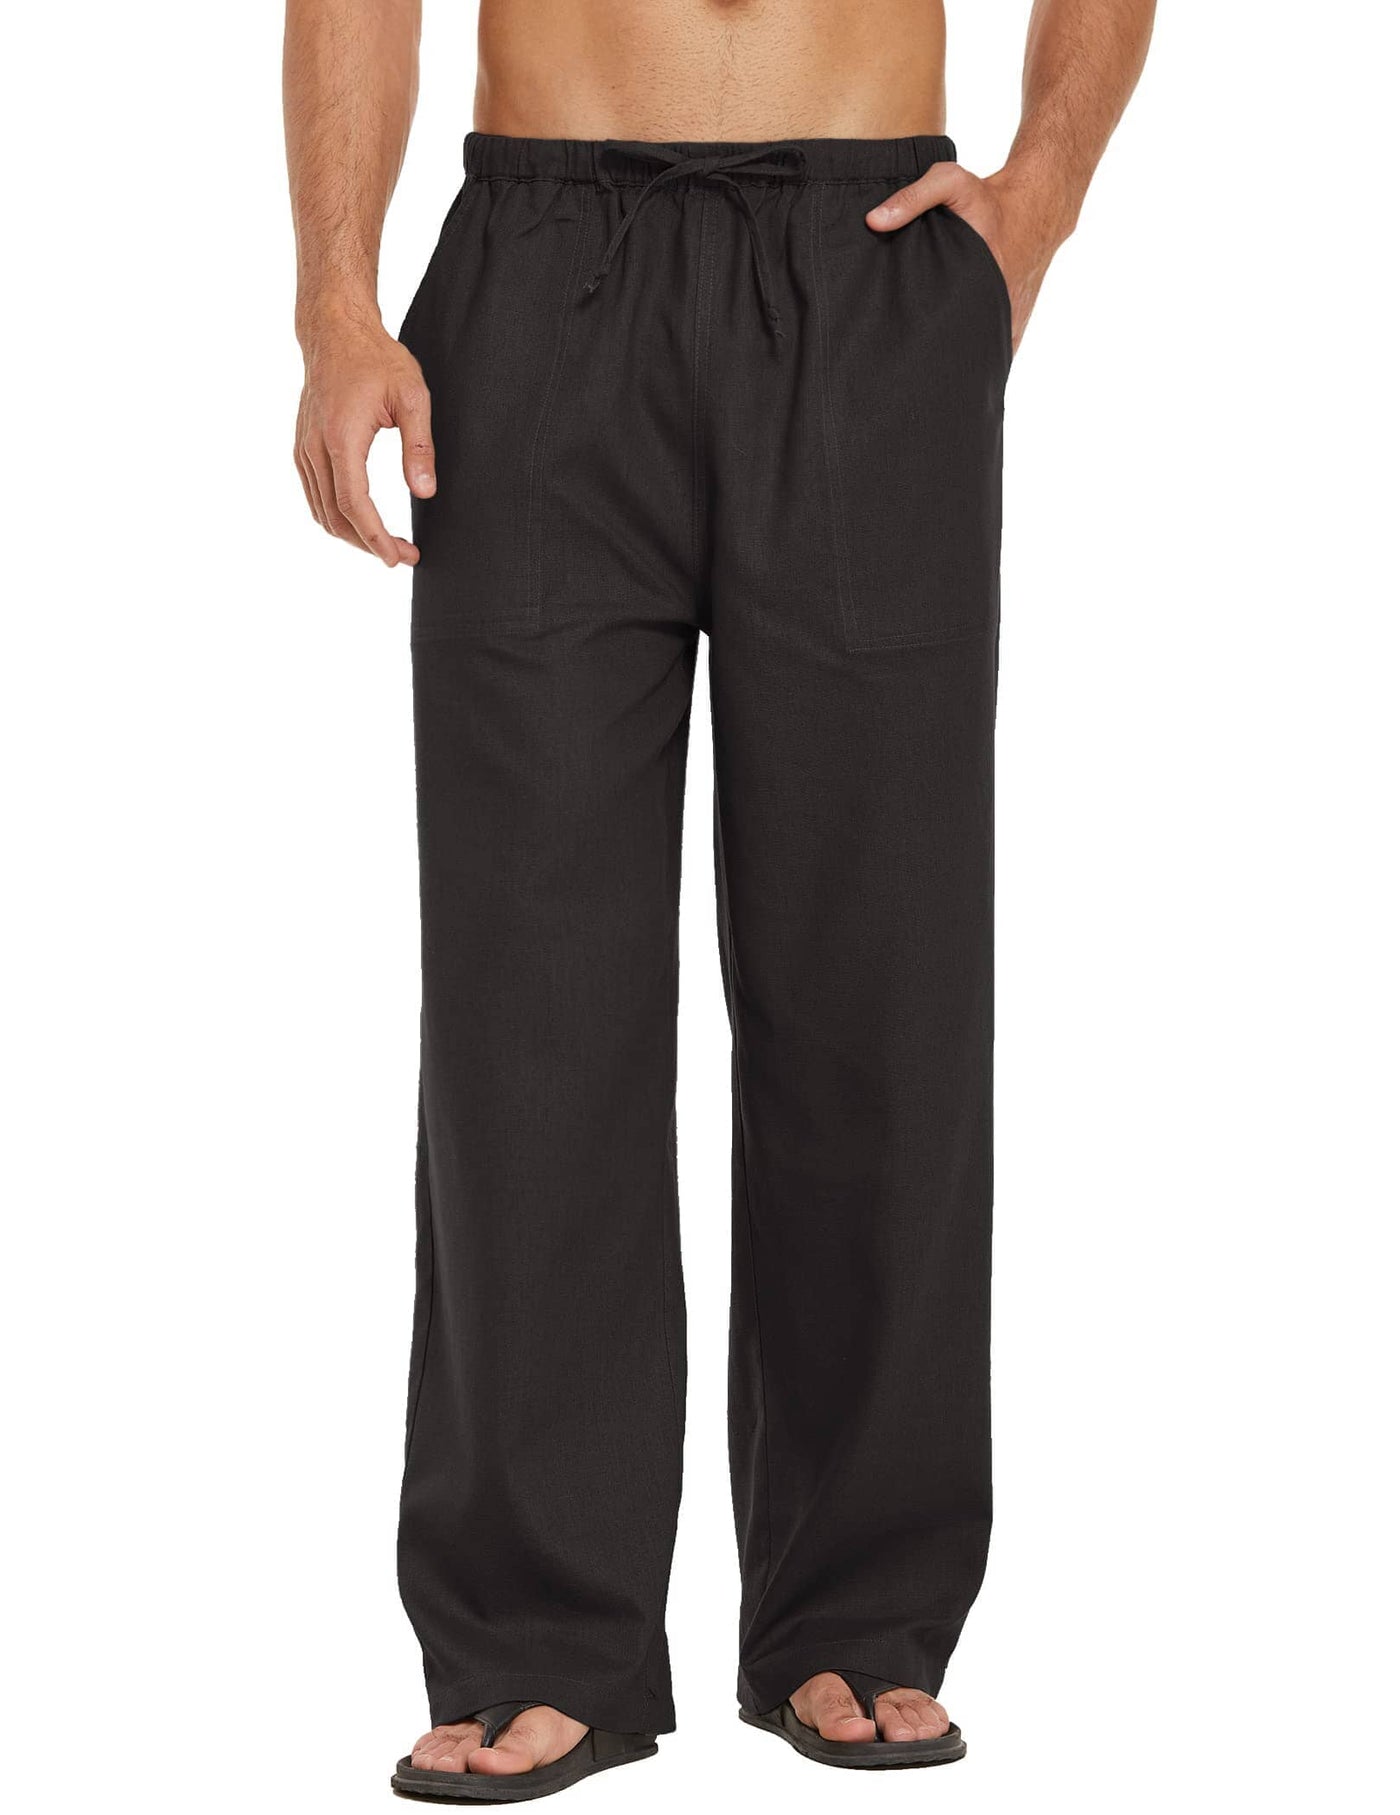 Coofandy Linen Style Loose Waist Yoga Pants (US Only) Pants coofandy Black S 